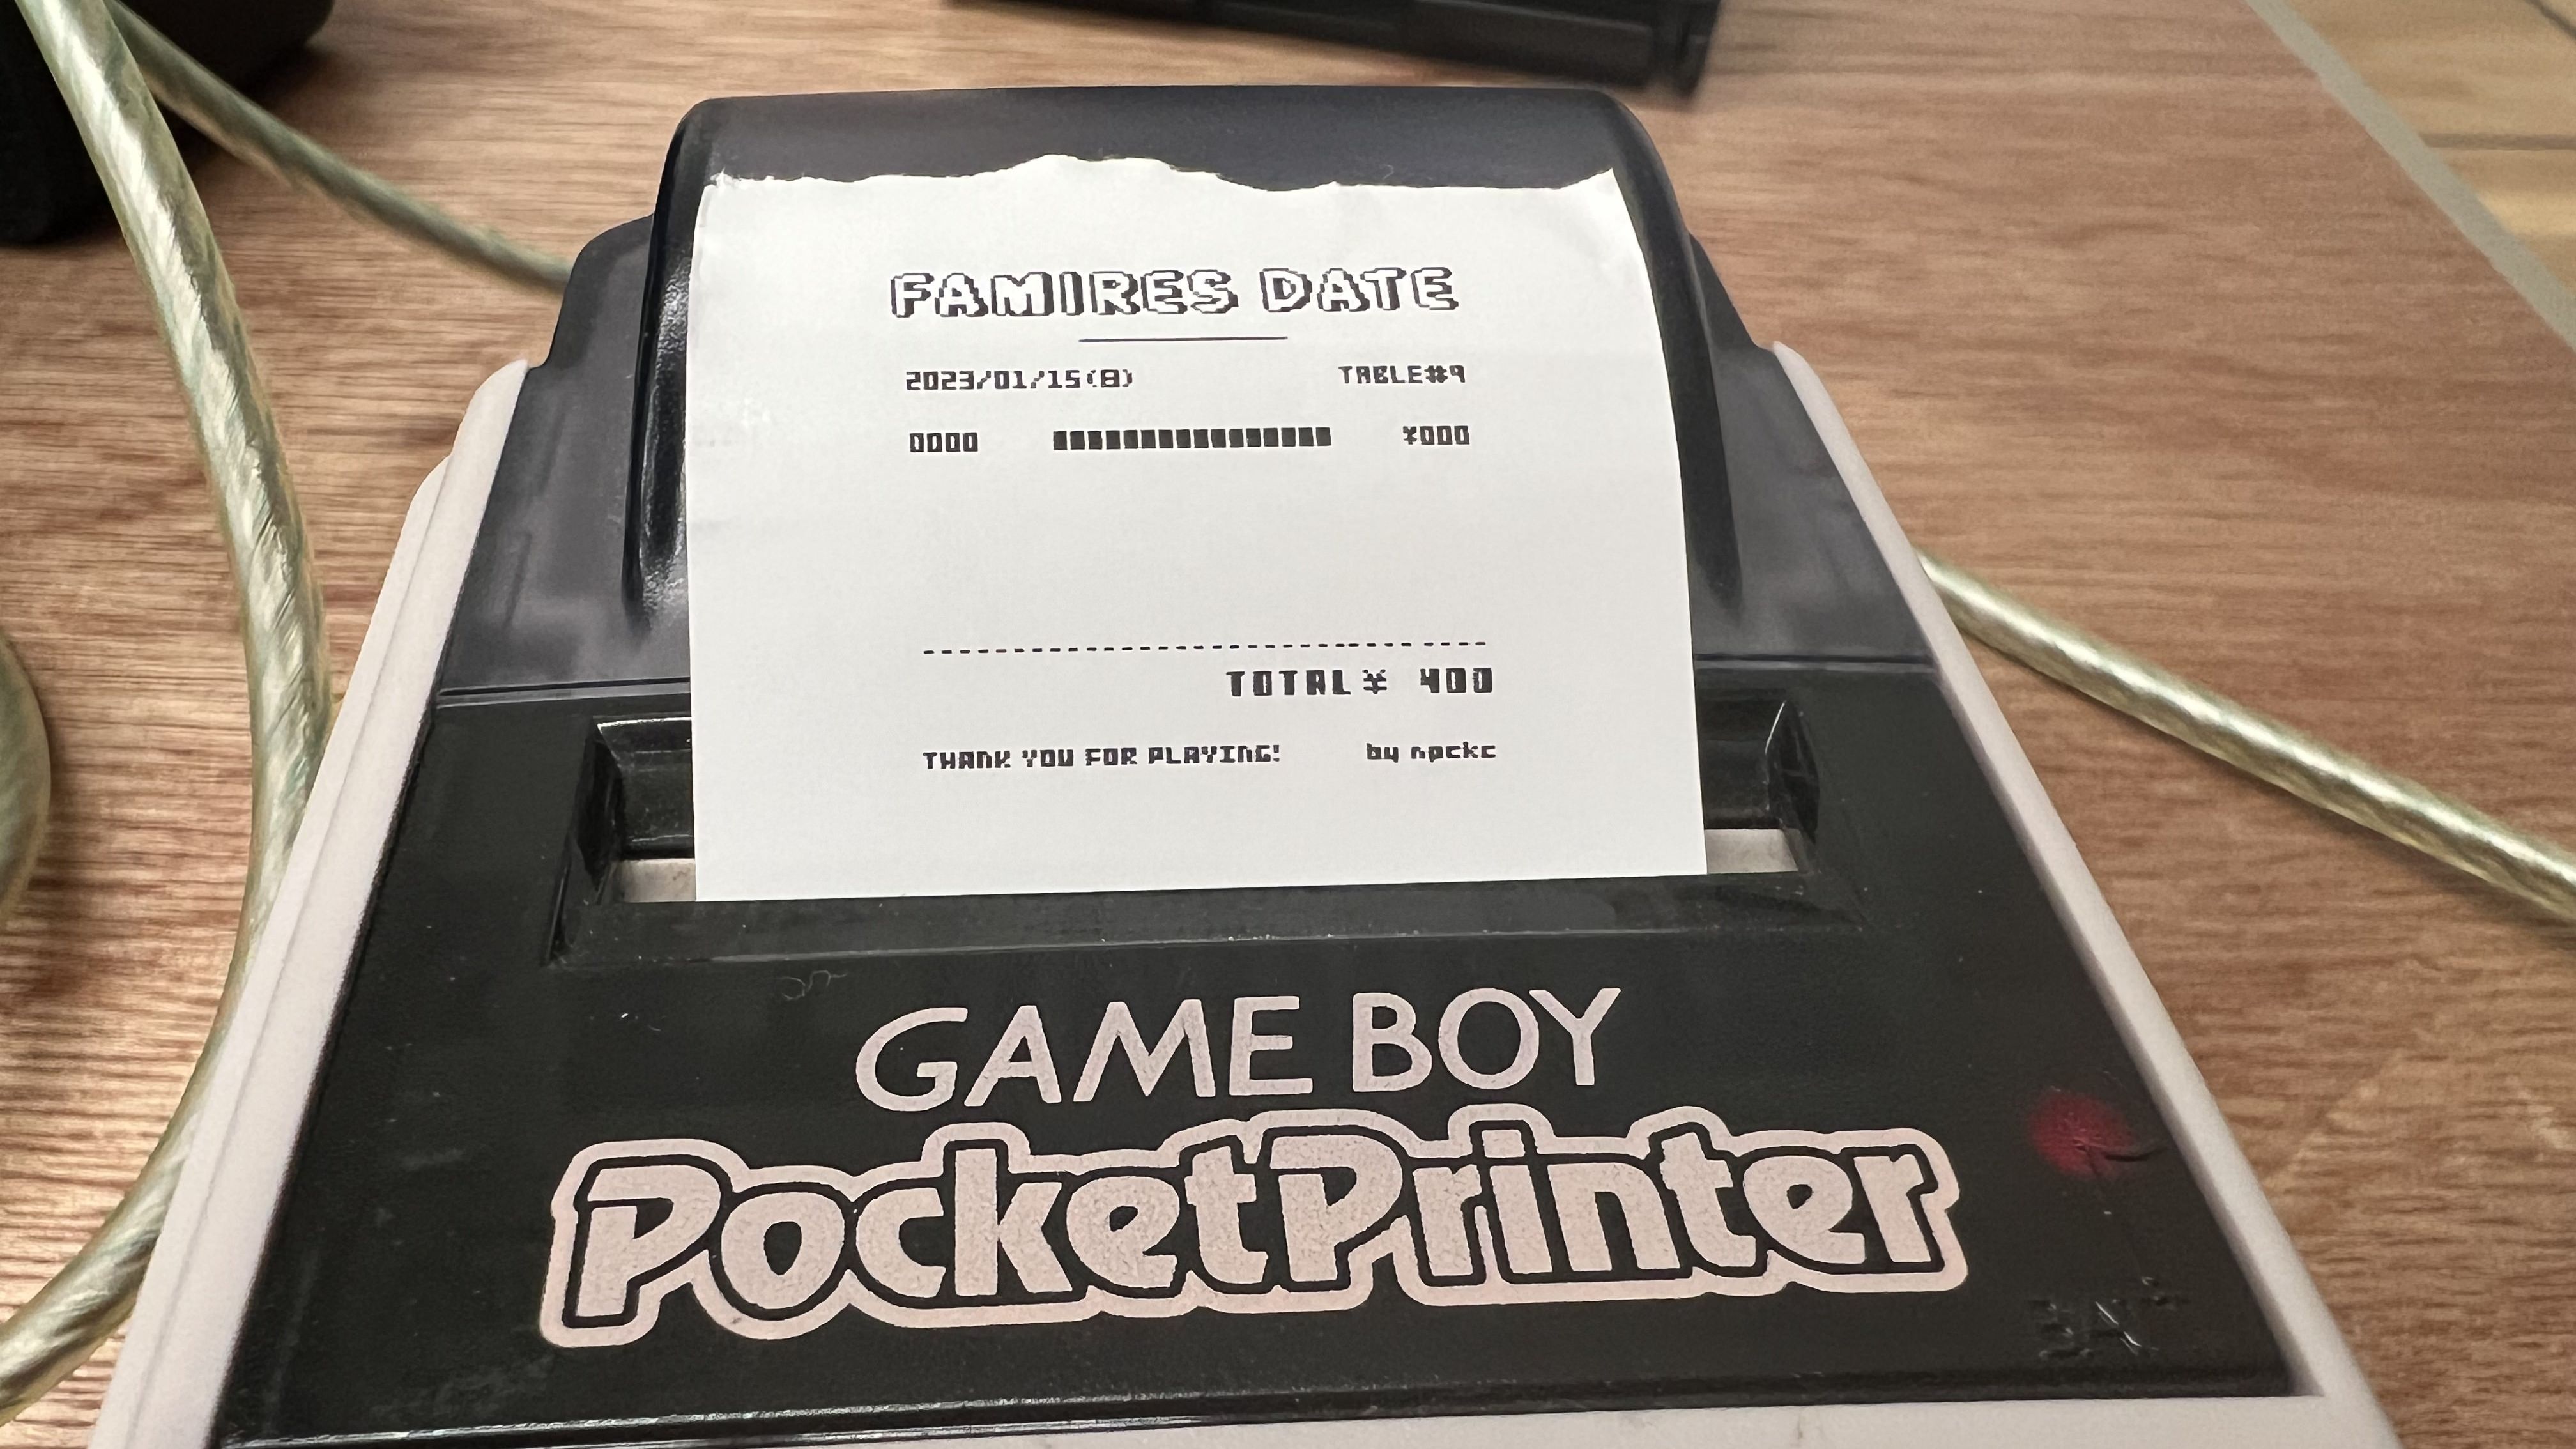 Datumsbeleg im PC-Doujin-Spiel Famires Date, gedruckt auf einem Game Boy PocketPrinter, gezeigt im Tokyo Game Dungeon